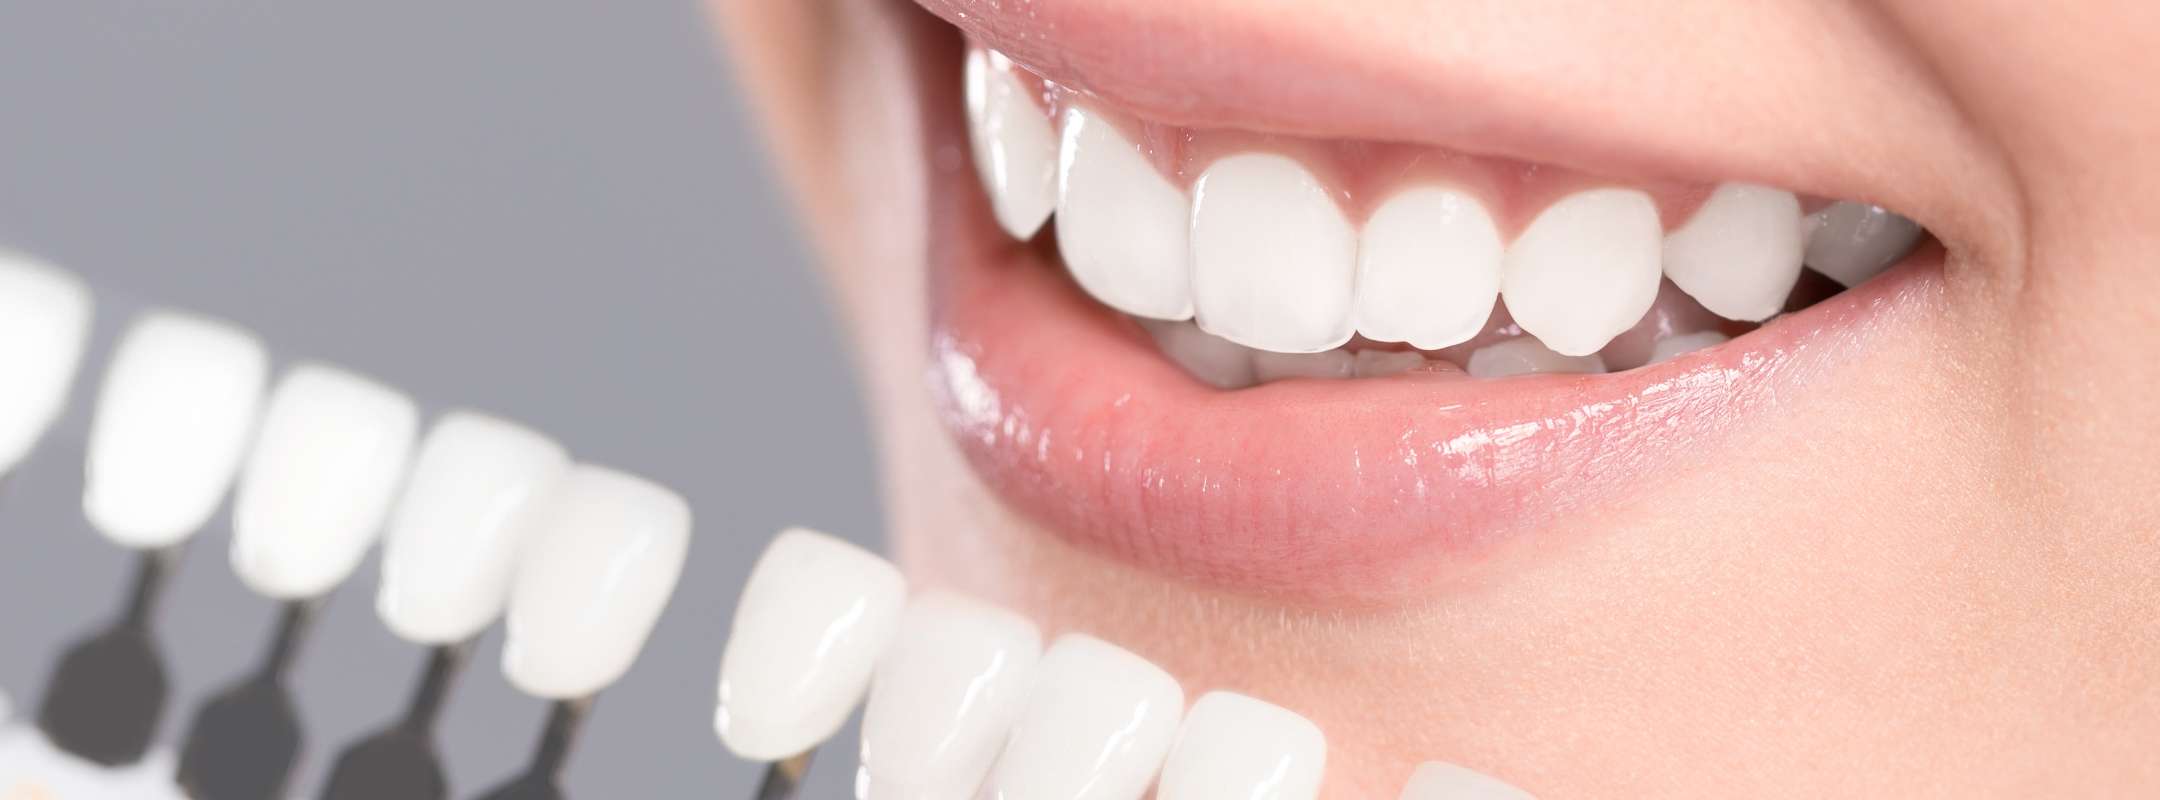 歯を白くするホワイトニング